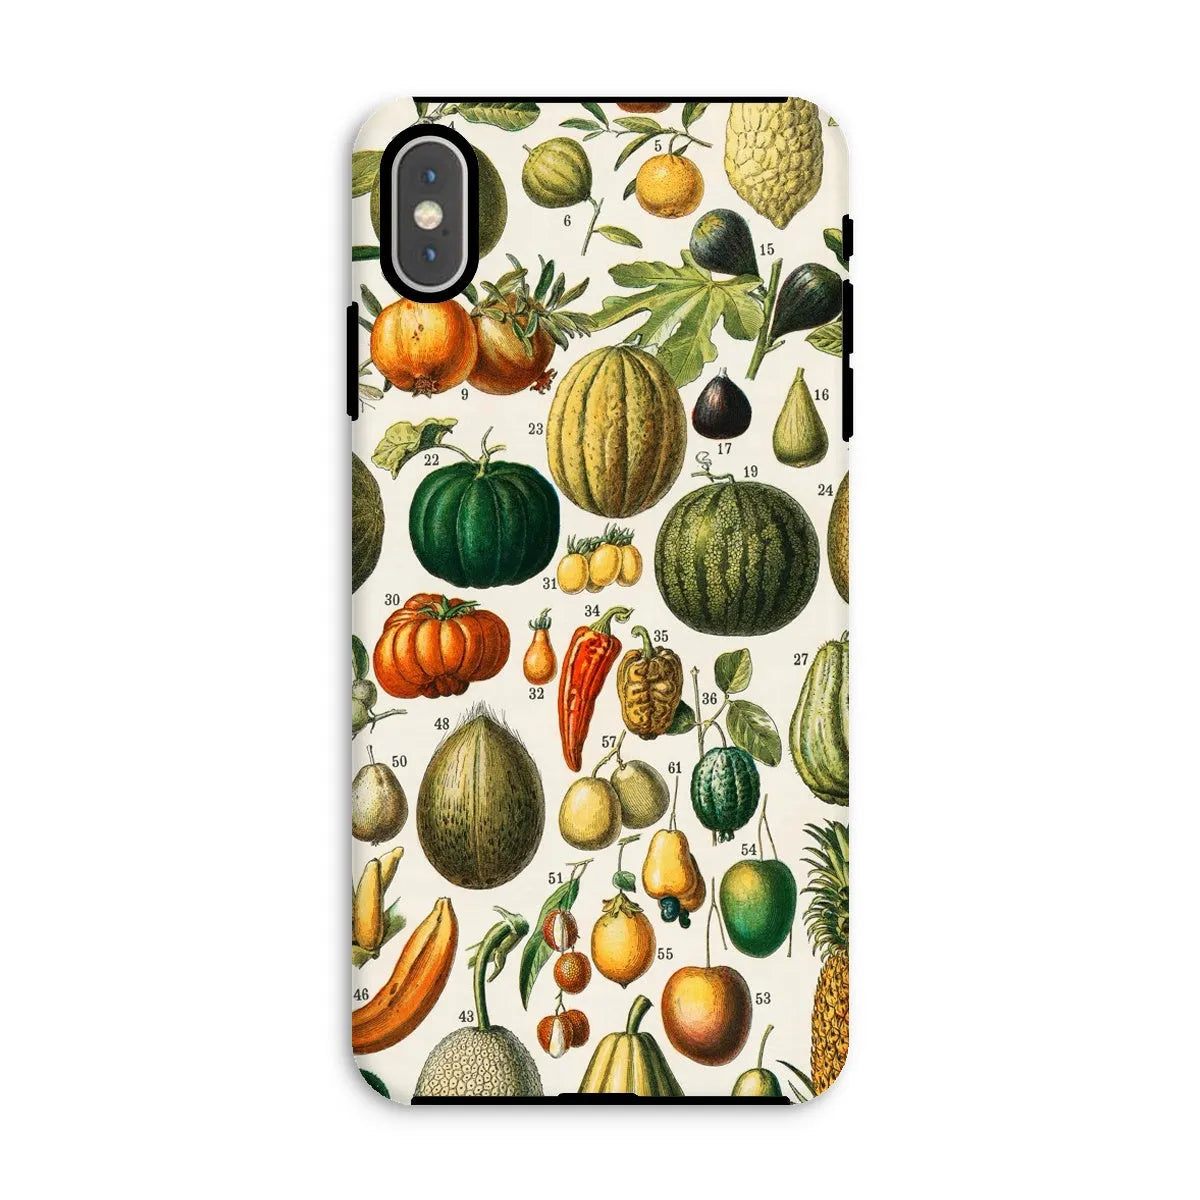 Fruits And Vegetables Art Phone Case - Nouveau Larousse Illustre - Iphone Xs Max / Matte - Mobile Phone Cases